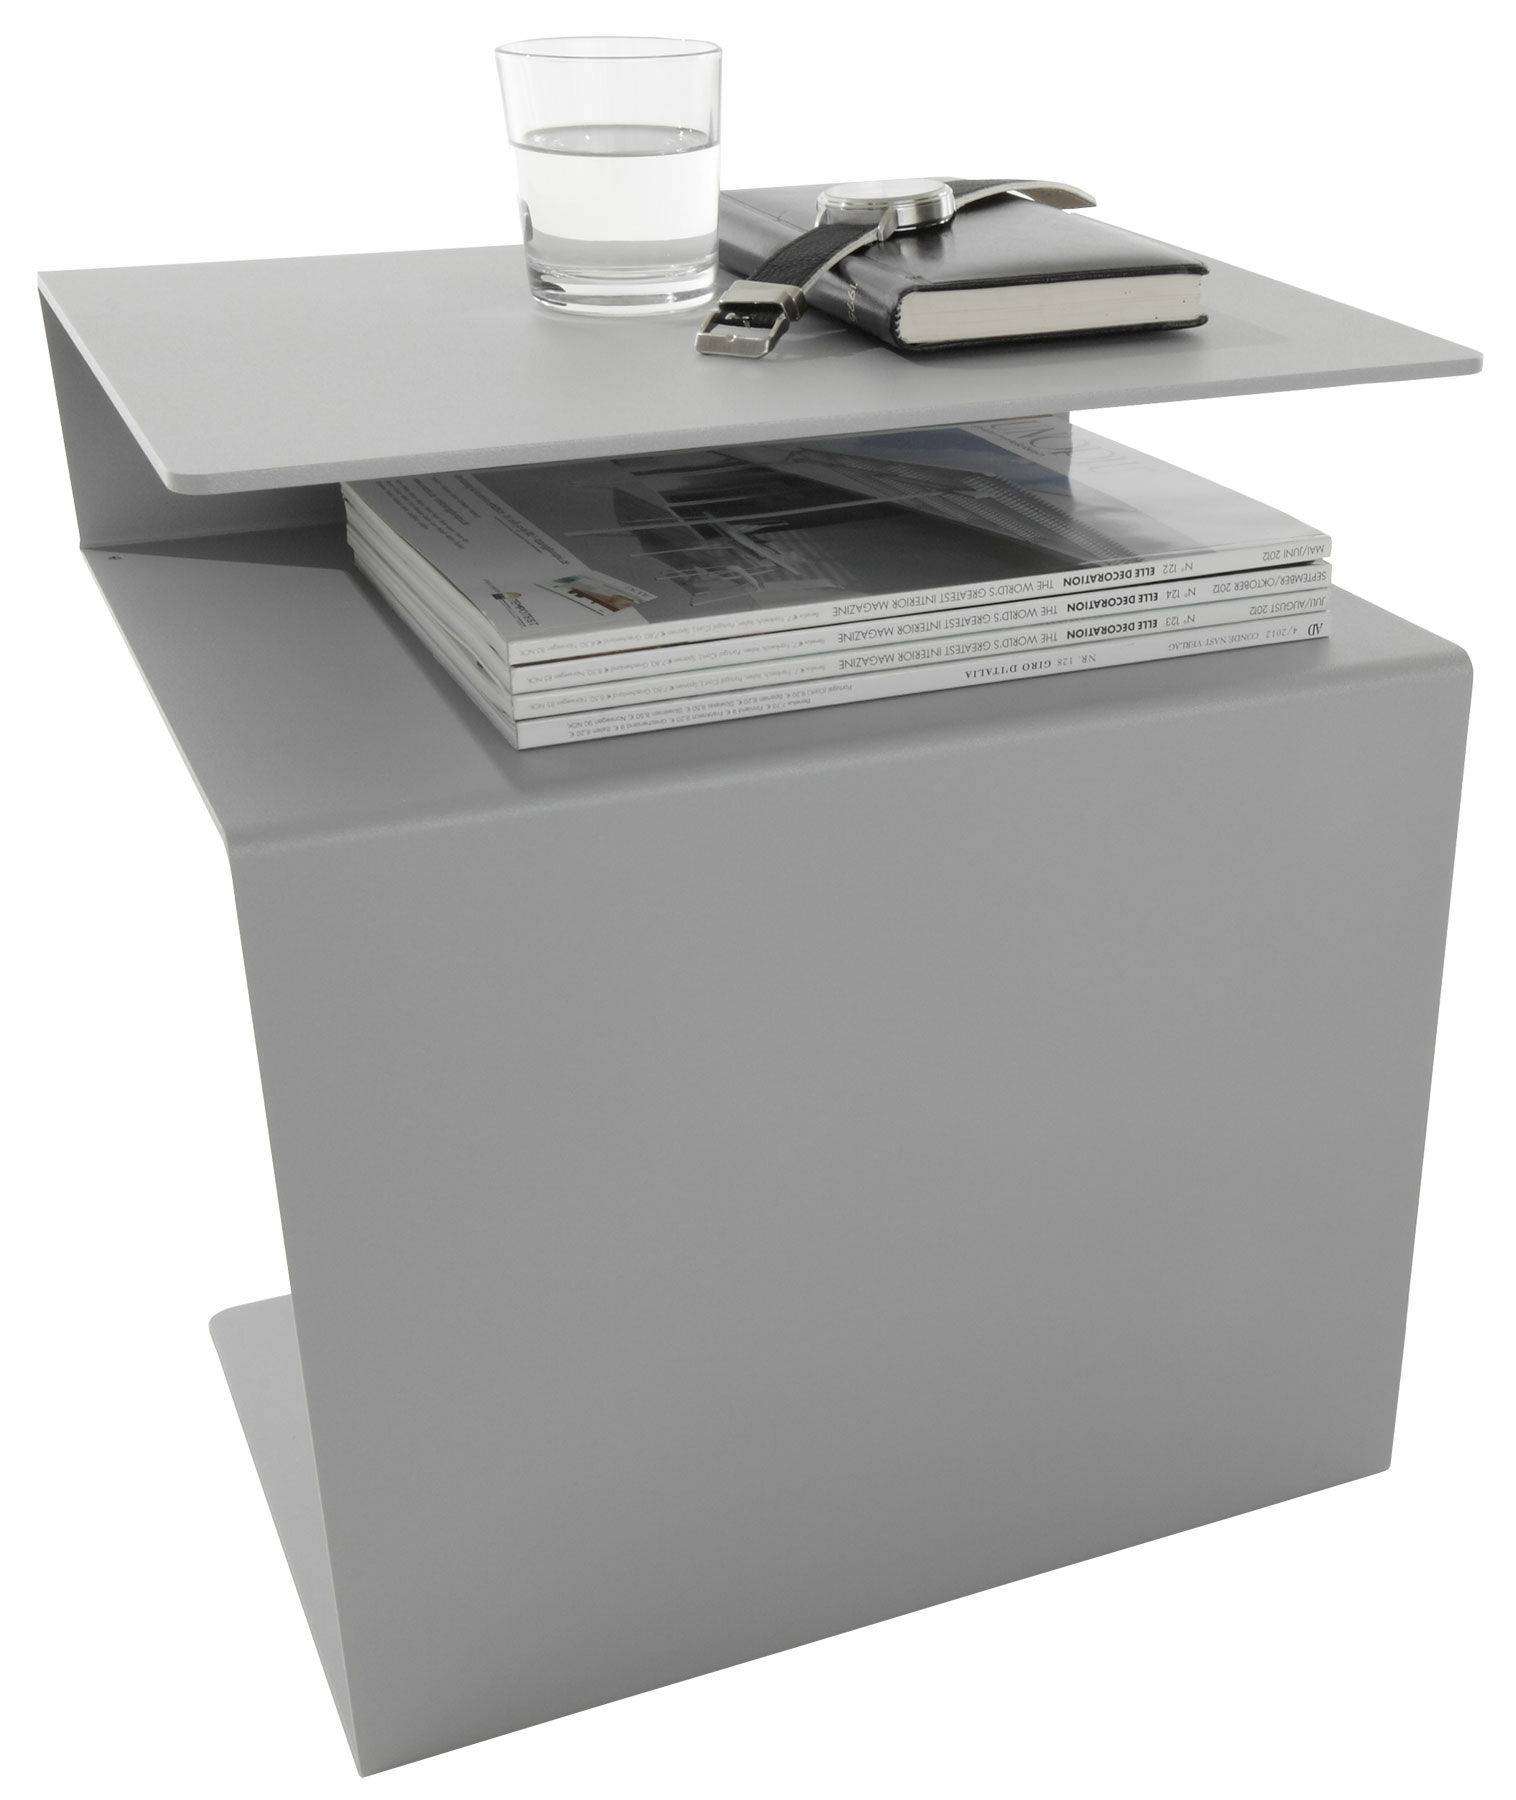 Table d'appoint multifonctionnelle "HUK" (sans décoration), version grise